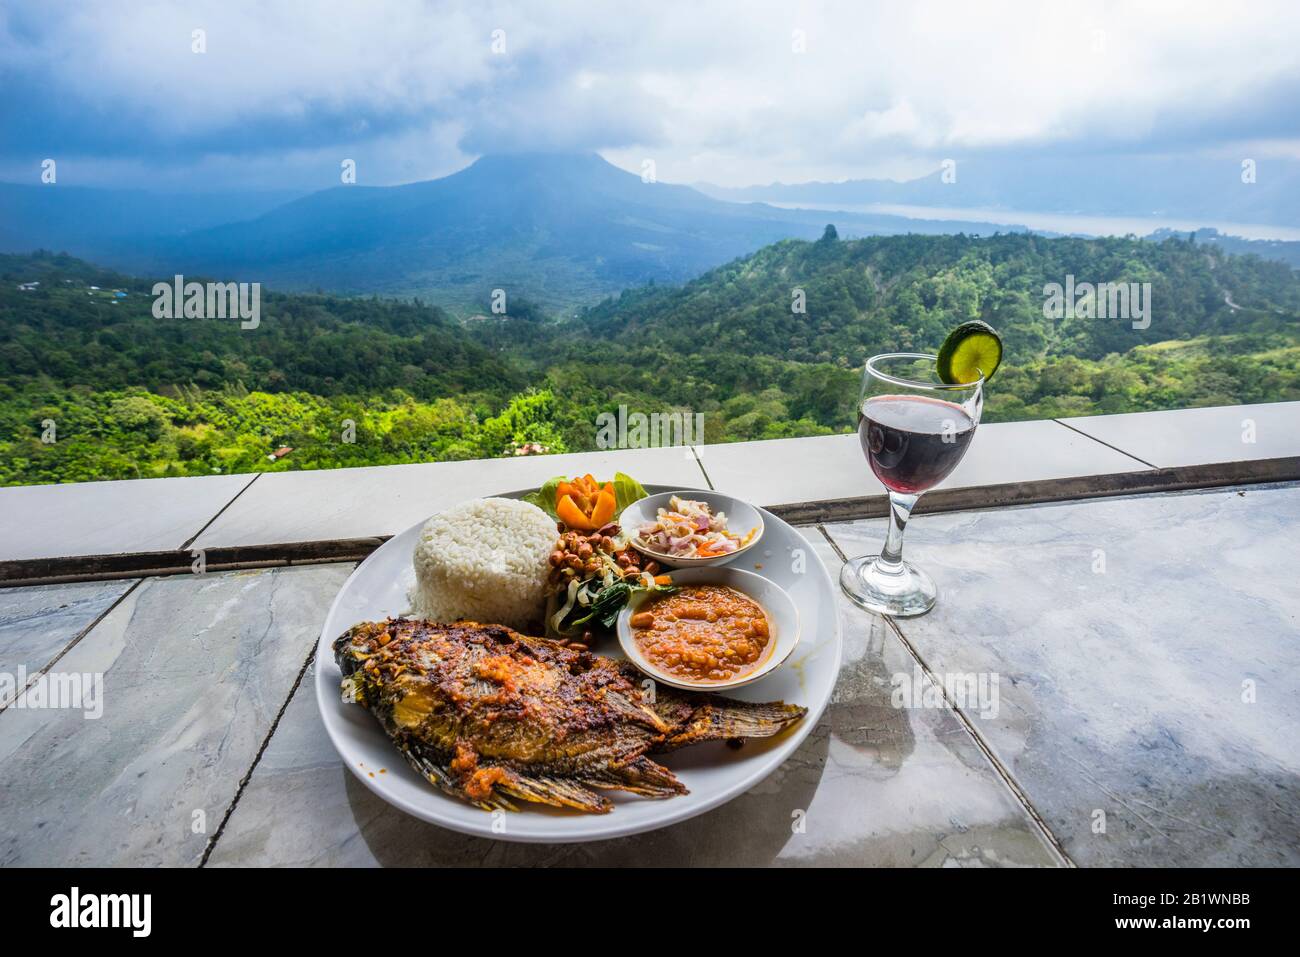 Mittagessen mit Blick auf den Berg Batur vom vulkanischen Hang der Batur Caldera in Kintamani, Bali, Bangli Regentschaft von Bali, Indonesien Stockfoto